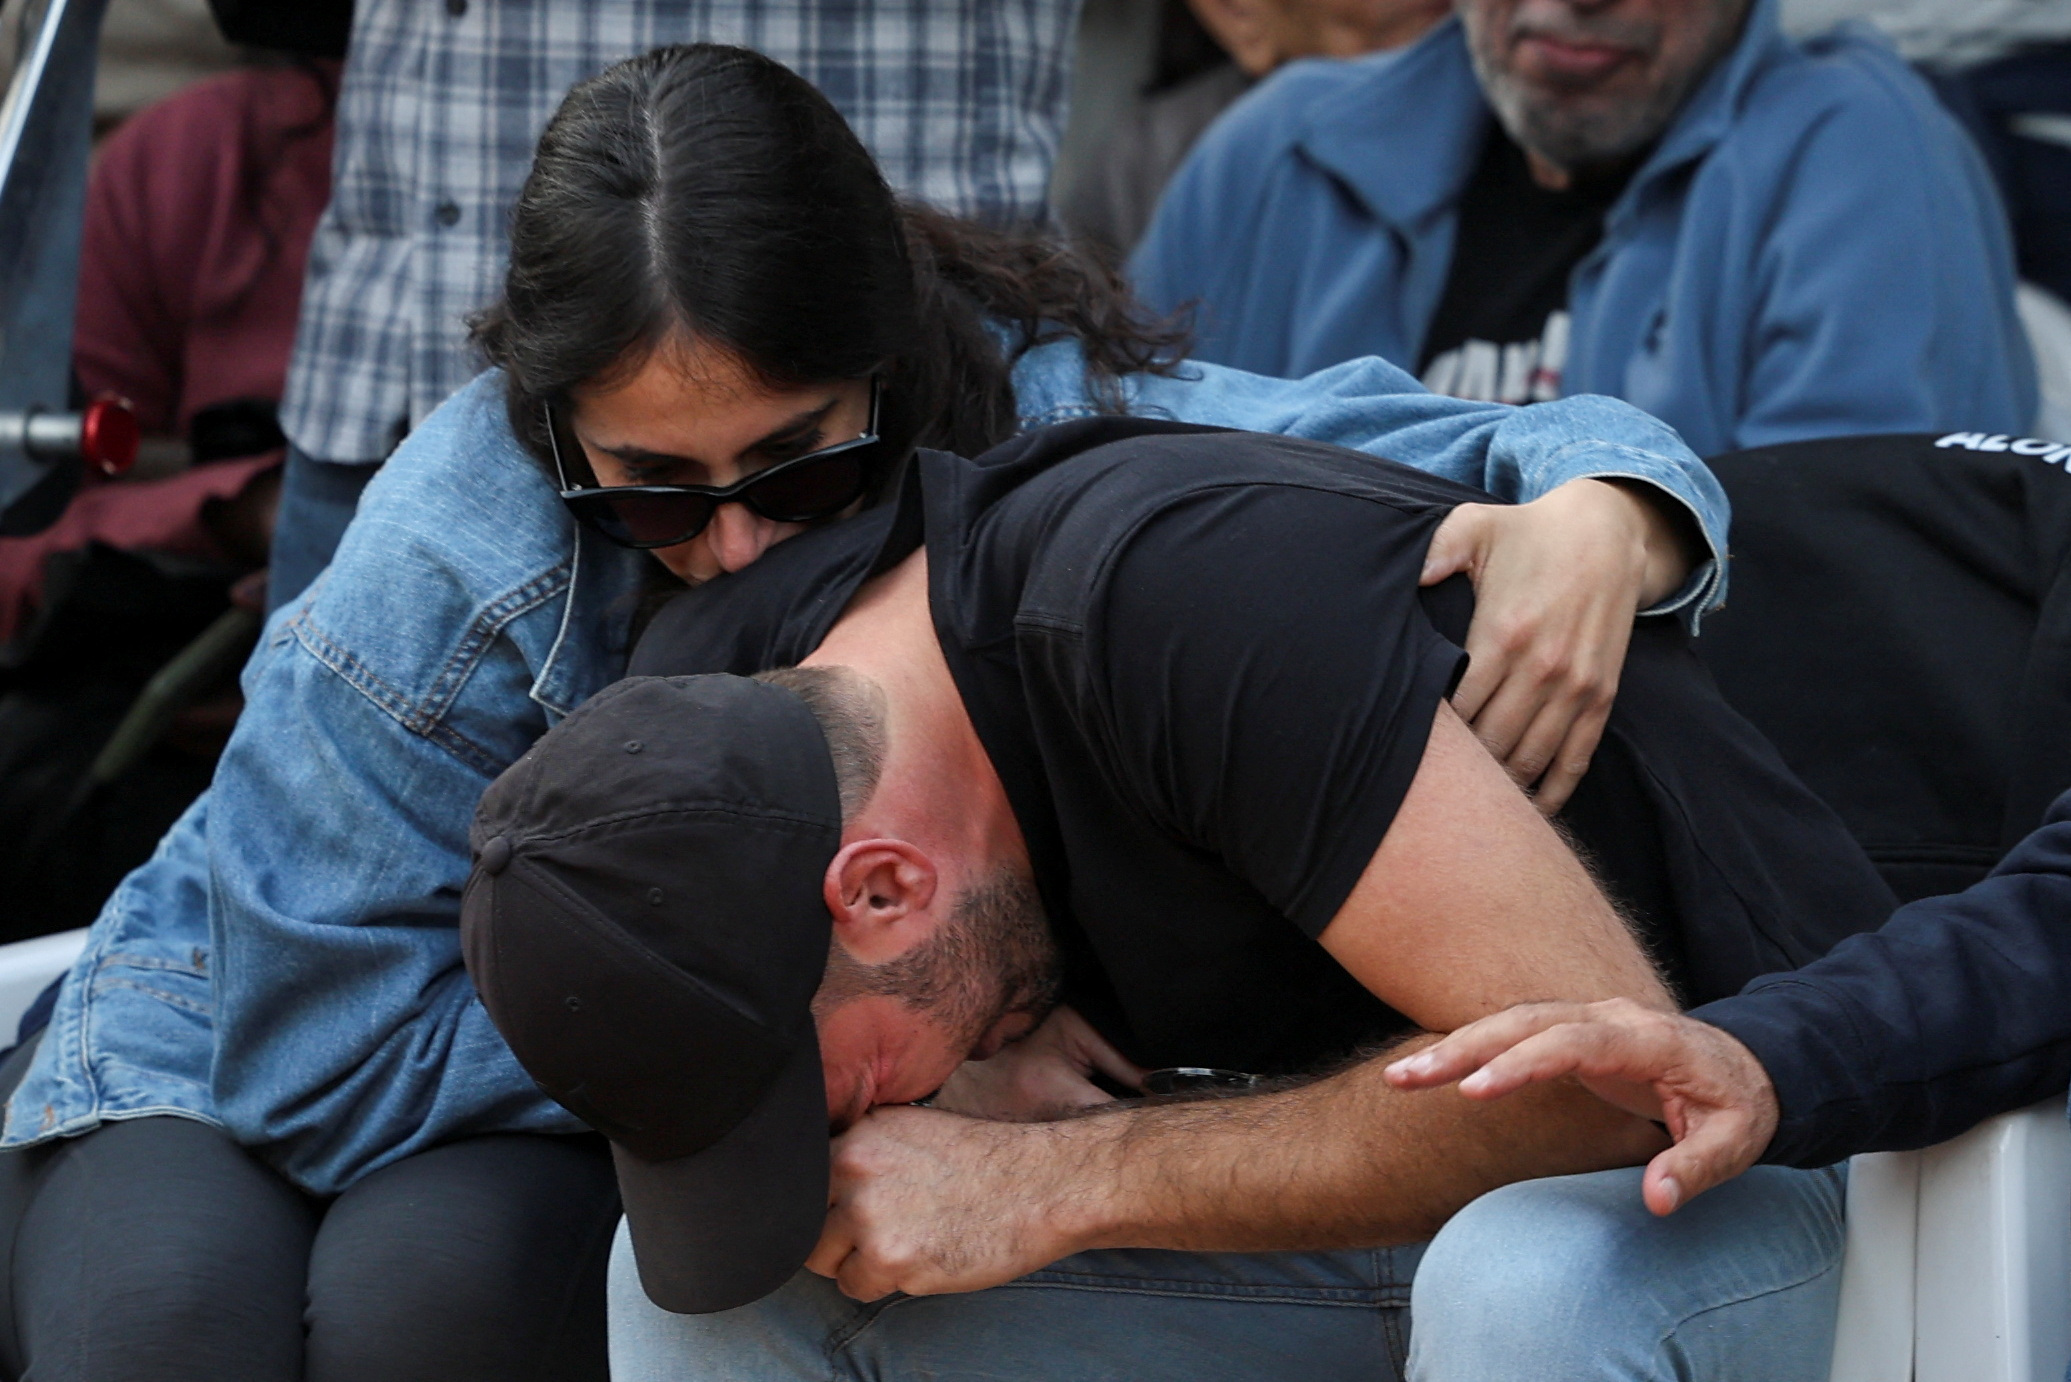 Alon wurde am Sonntag in Israel beigesetzt, während Tausende von Trauergästen kamen, um ihm die letzte Ehre zu erweisen